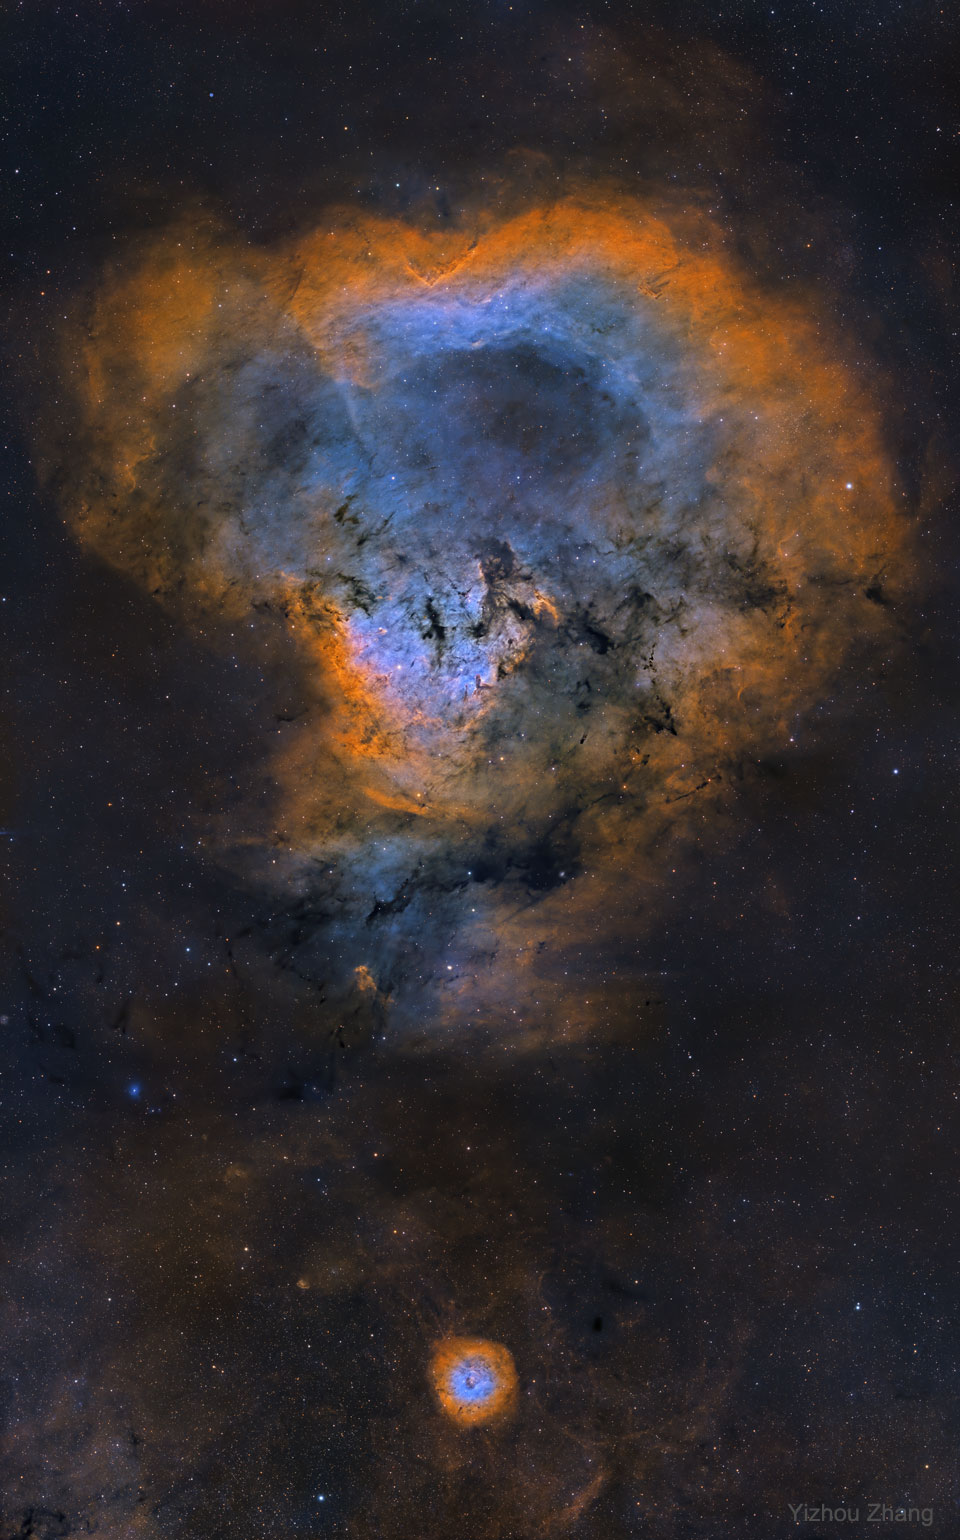 Die leuchtende Sternbildungsregion NGC 7822 liegt etwa 3000 Lichtjahre entfernt am Rand einer riesigen Molekülwolke im nördlichen Sternbild Kepheus.